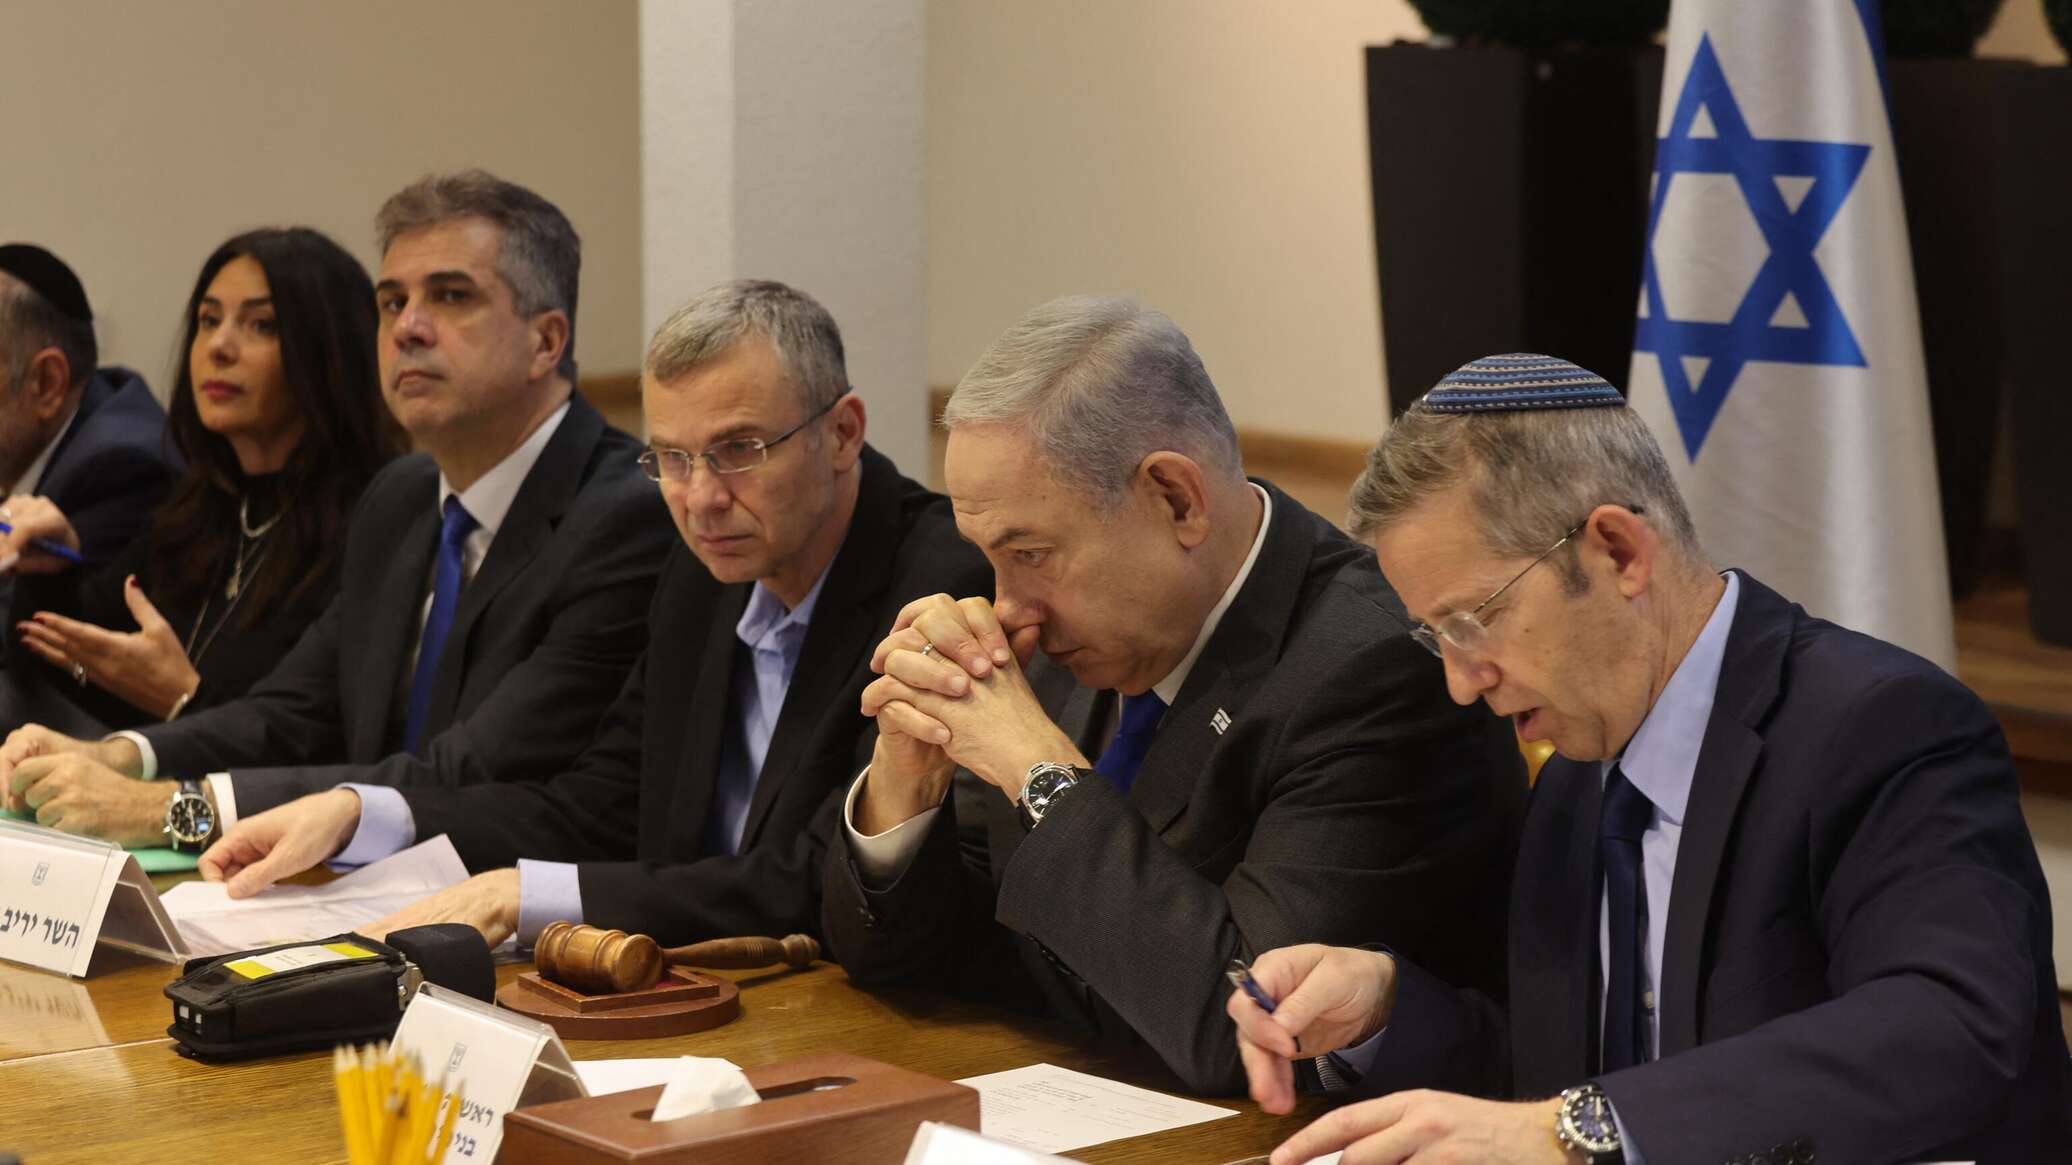 "حماس": على إسرائيل الابتعاد عن ألاعيب نتنياهو إن أرادت أسراها أحياء